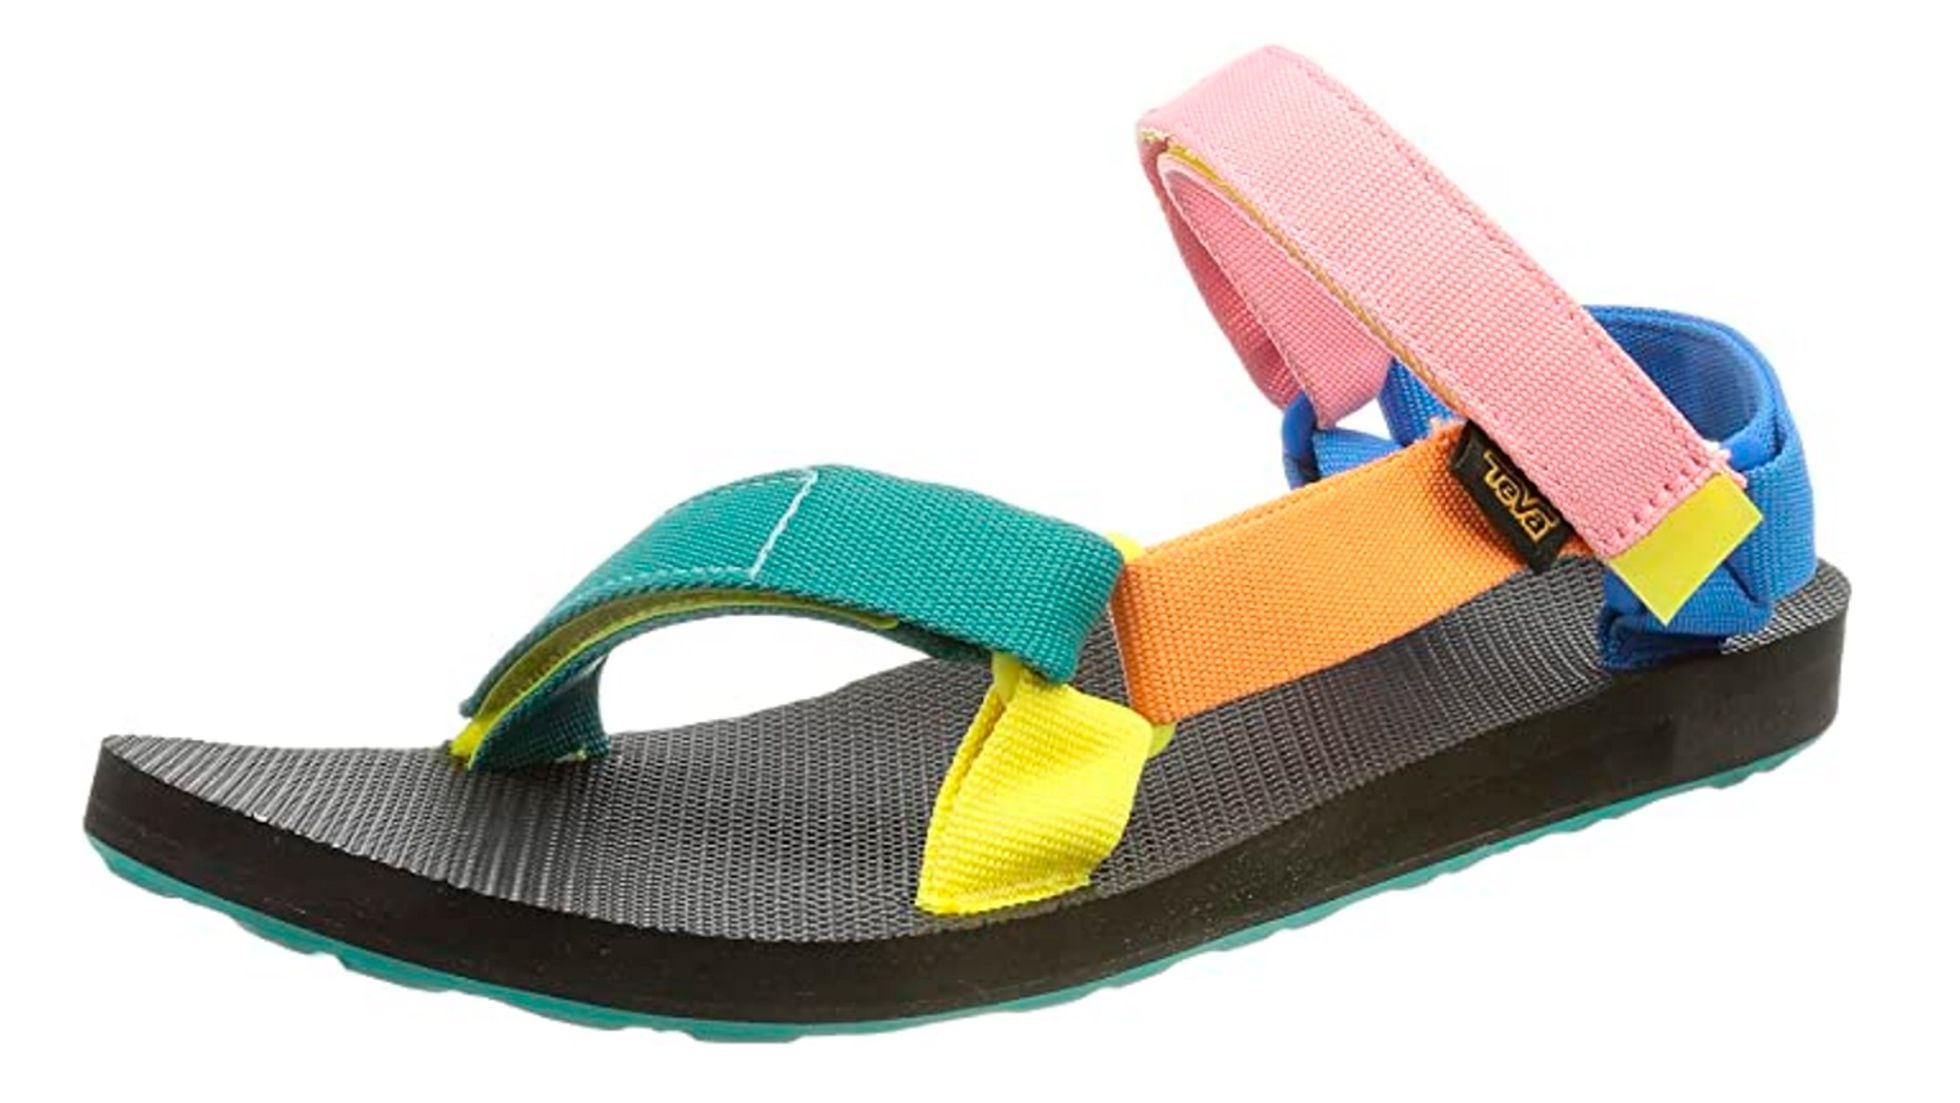 TEVA: Las sandalias tan cómodas estilosas que llevan 'influencers': son tendencia y combinan con todo | Escaparate: compras ofertas | EL PAÍS